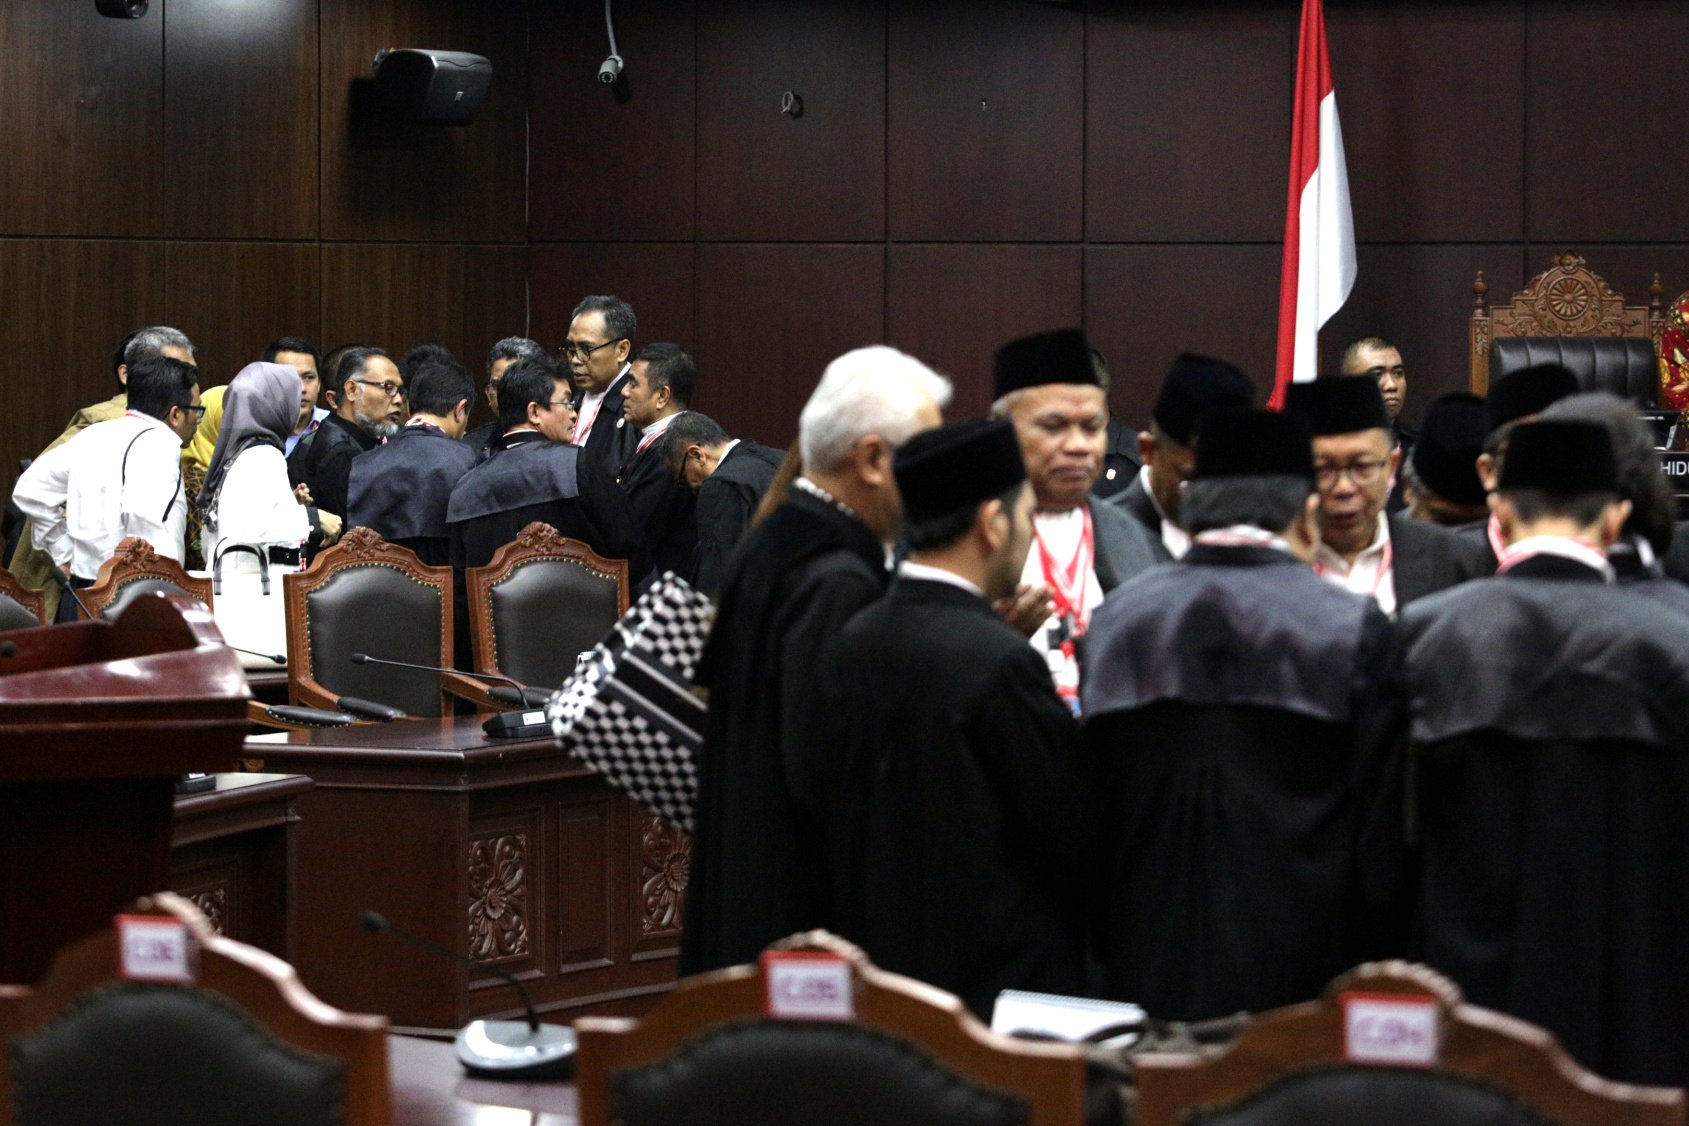 Suasana usai pembacaan putusan sidang sengketa Pilpres 2019, Mahkamah Konstitusi, Jakarta Pusat (27/6). Mahkamah Konstitusi (MK) menolak seluruh permohonan yang diajukan Prabowo-Sandi dalam sengketa pilpres.